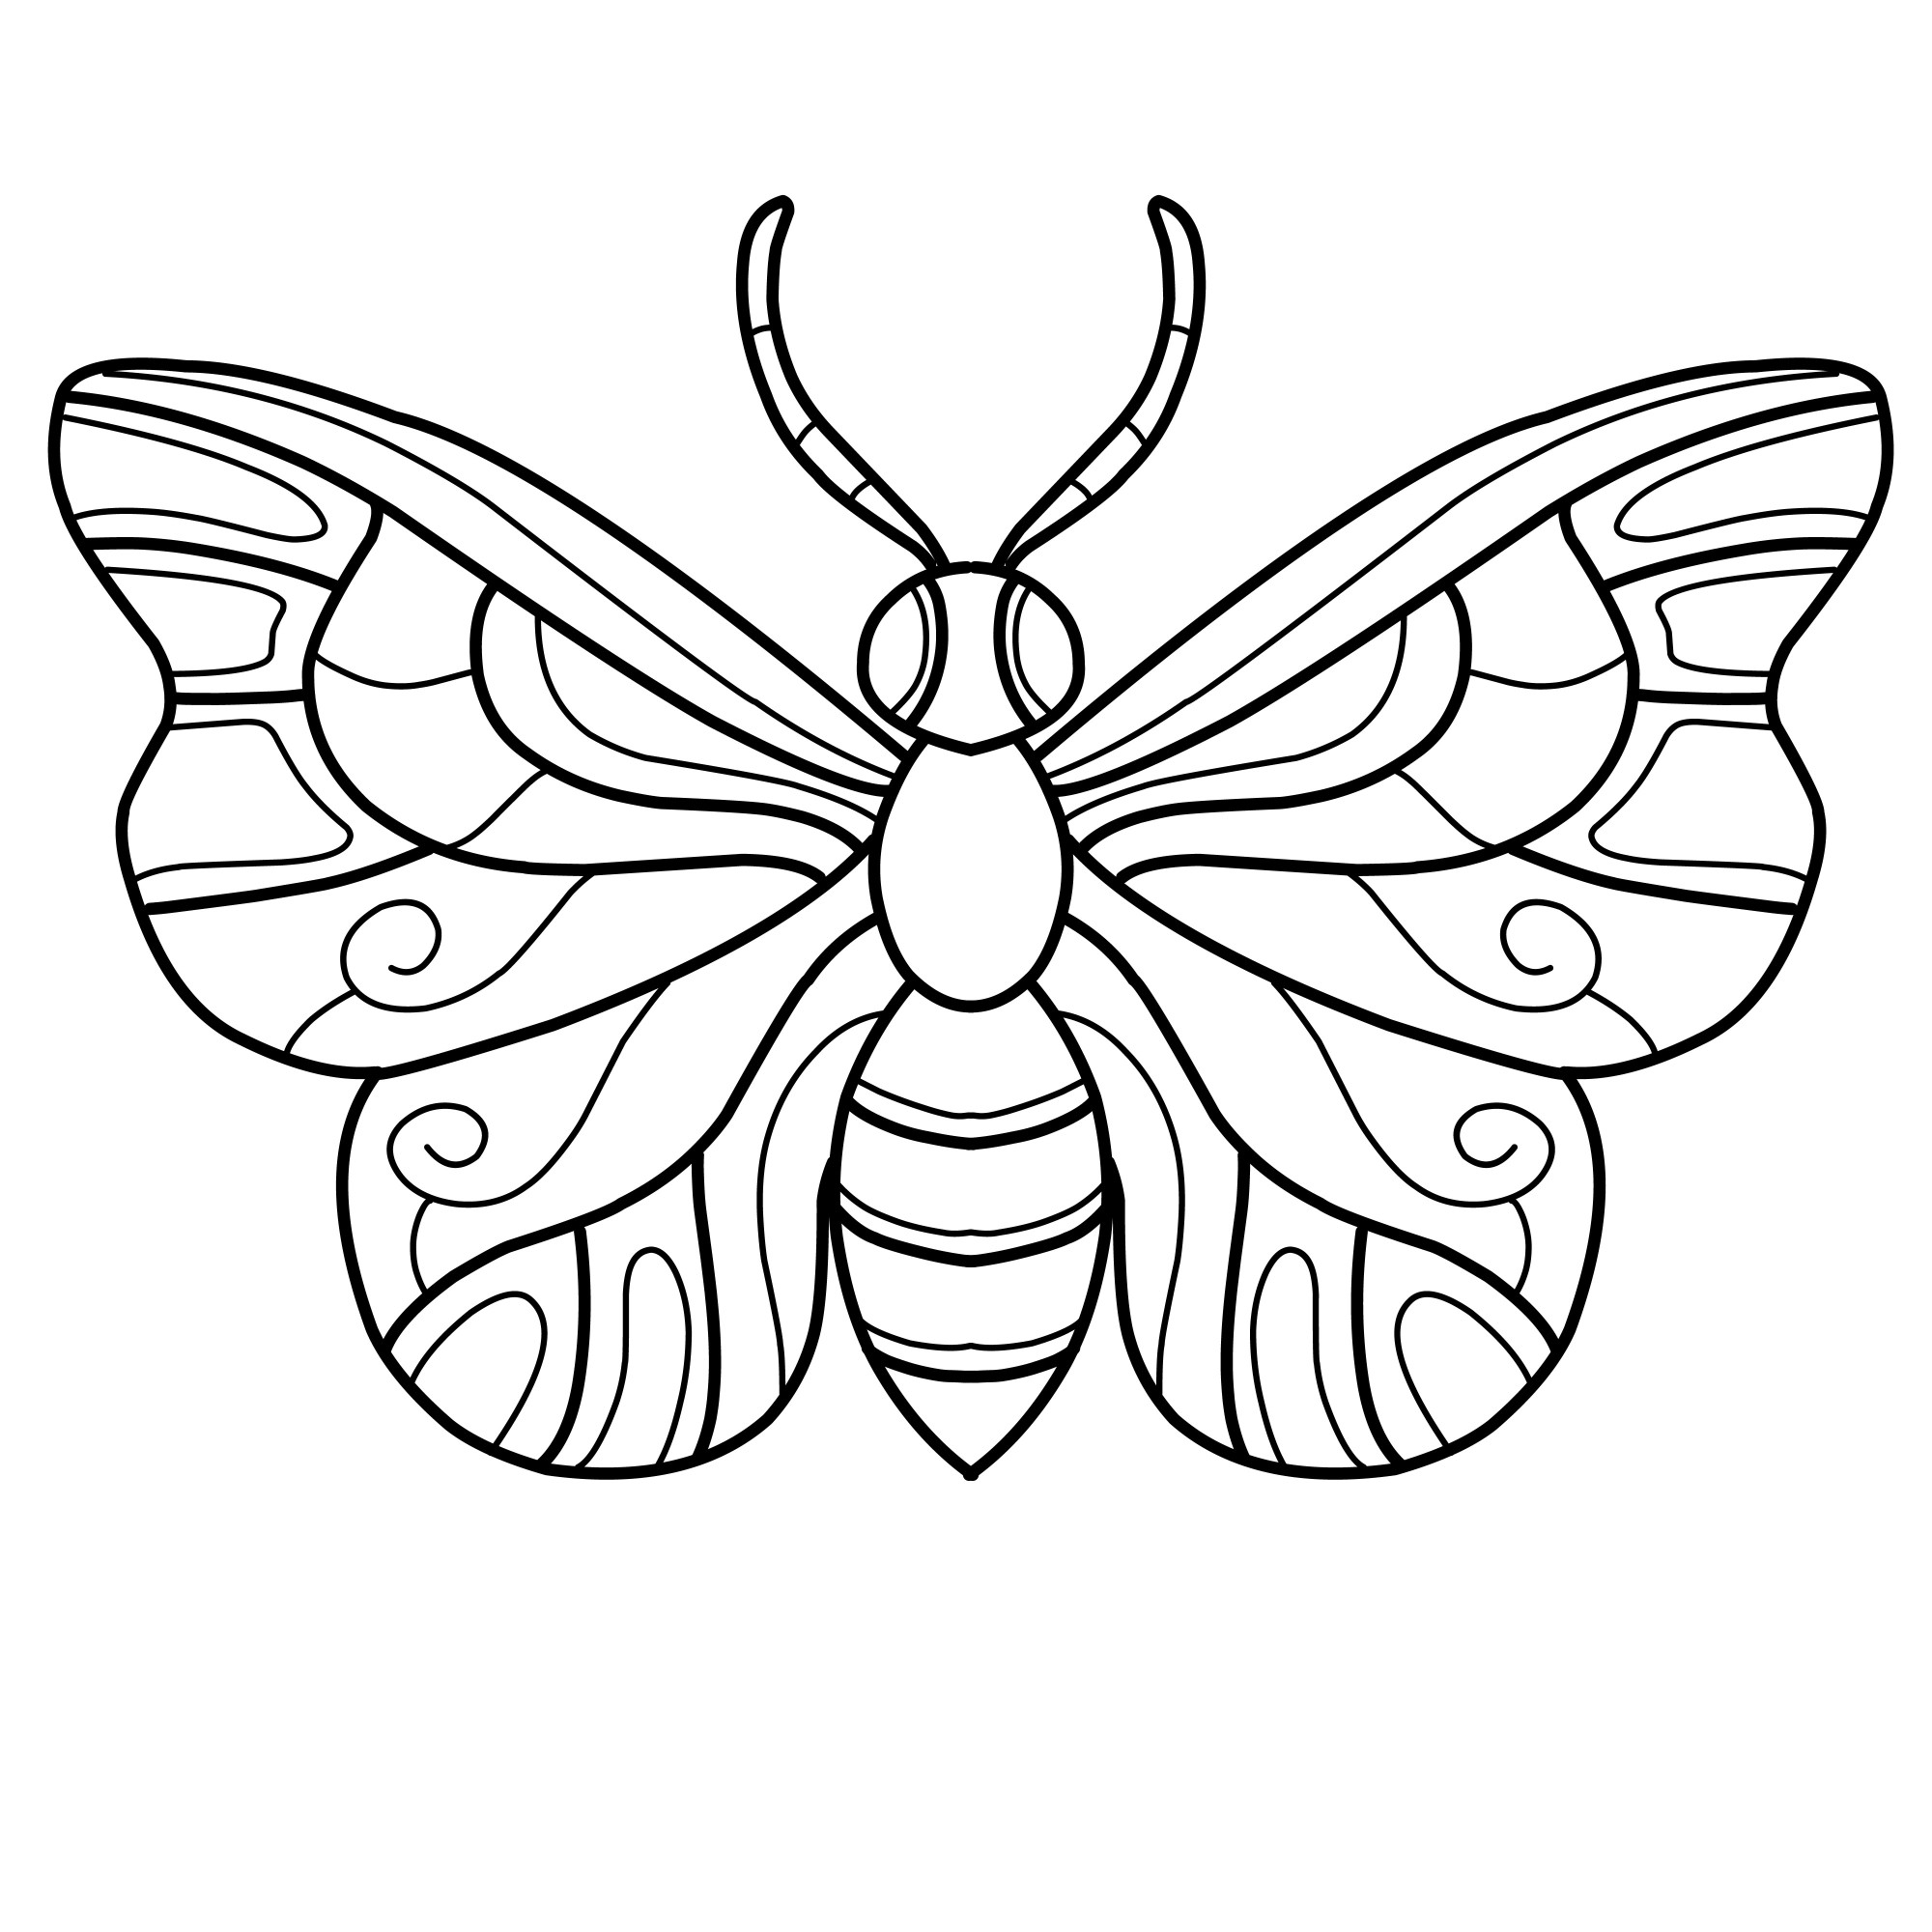 Раскраска для детей: насекомое бабочка с большими усиками